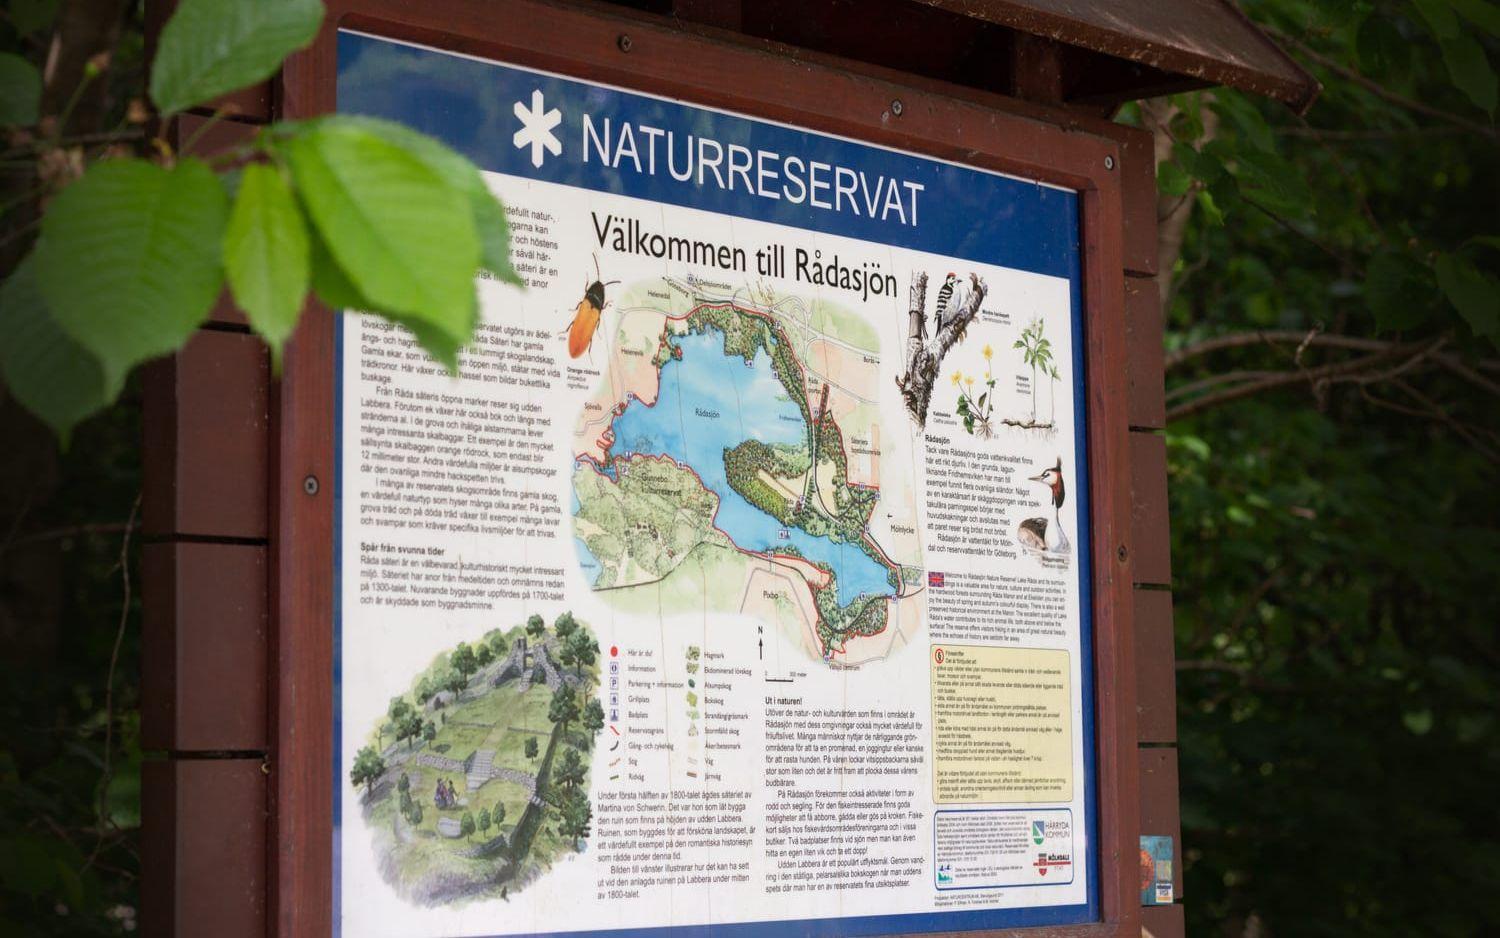 Soptunnorna är tänkt för besökare av Rådasjöns naturreservat, men istället har det blivit en informell sopstation för allt möjligt skräp. 